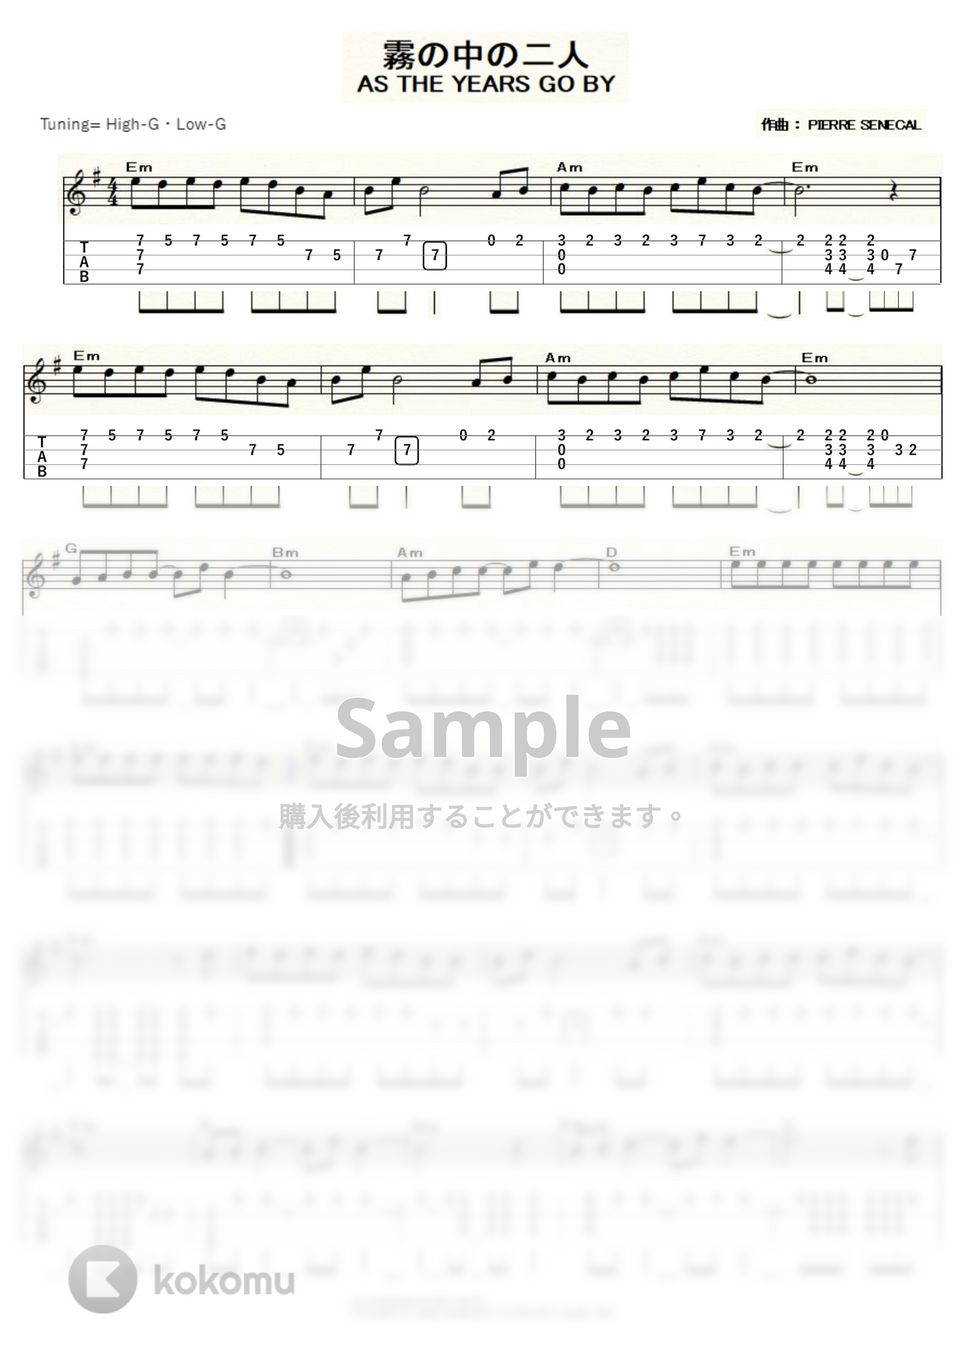 マッシュマッカーン - 霧の中の二人～AS THE YEARS GO BY～ (ｳｸﾚﾚｿﾛ / High-G・Low-G / 中級) by ukulelepapa